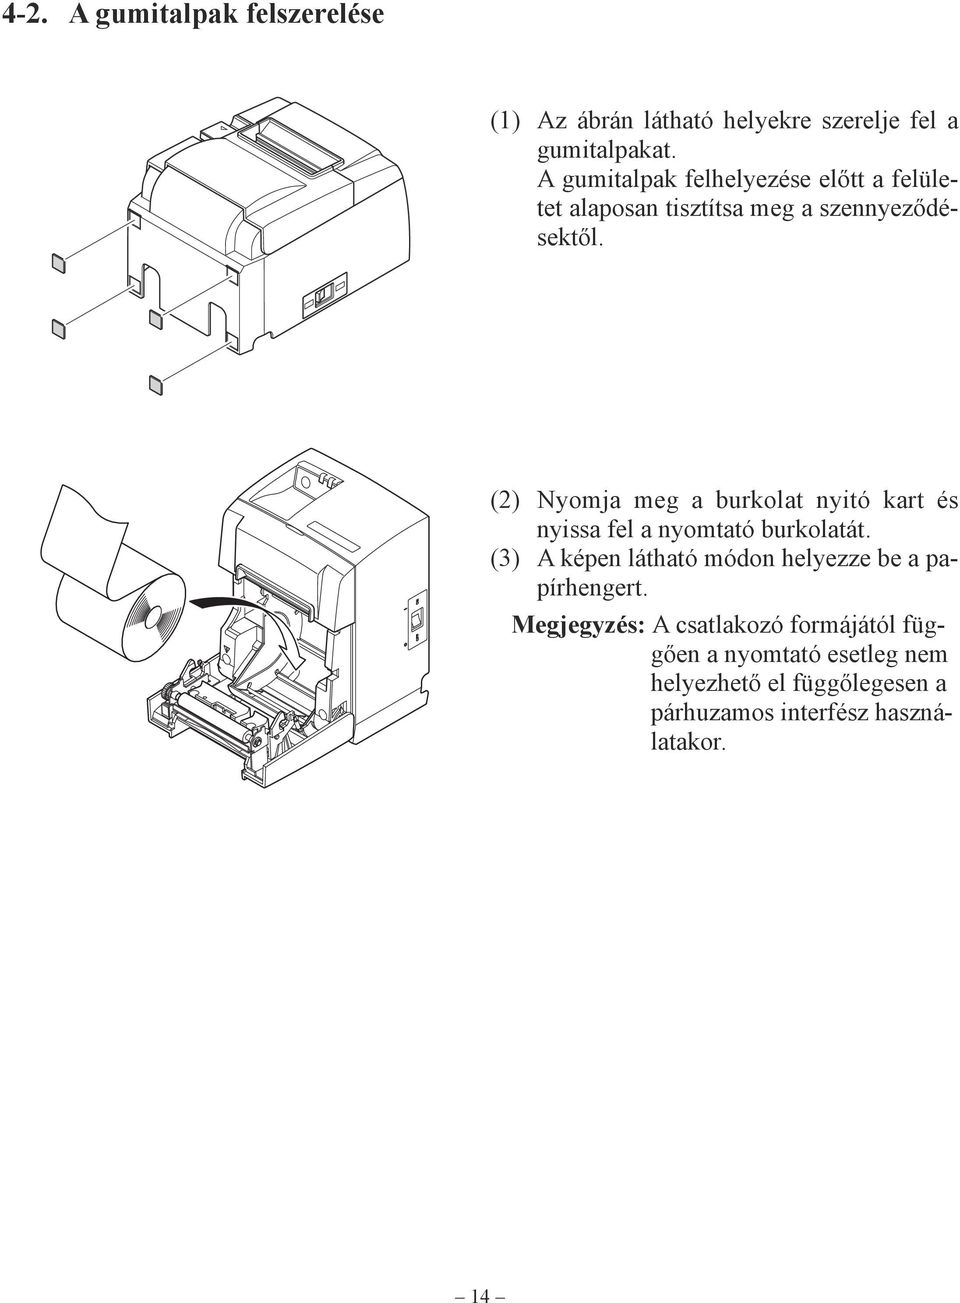 (2) Nyomja meg a burkolat nyitó kart és nyissa fel a nyomtató burkolatát.